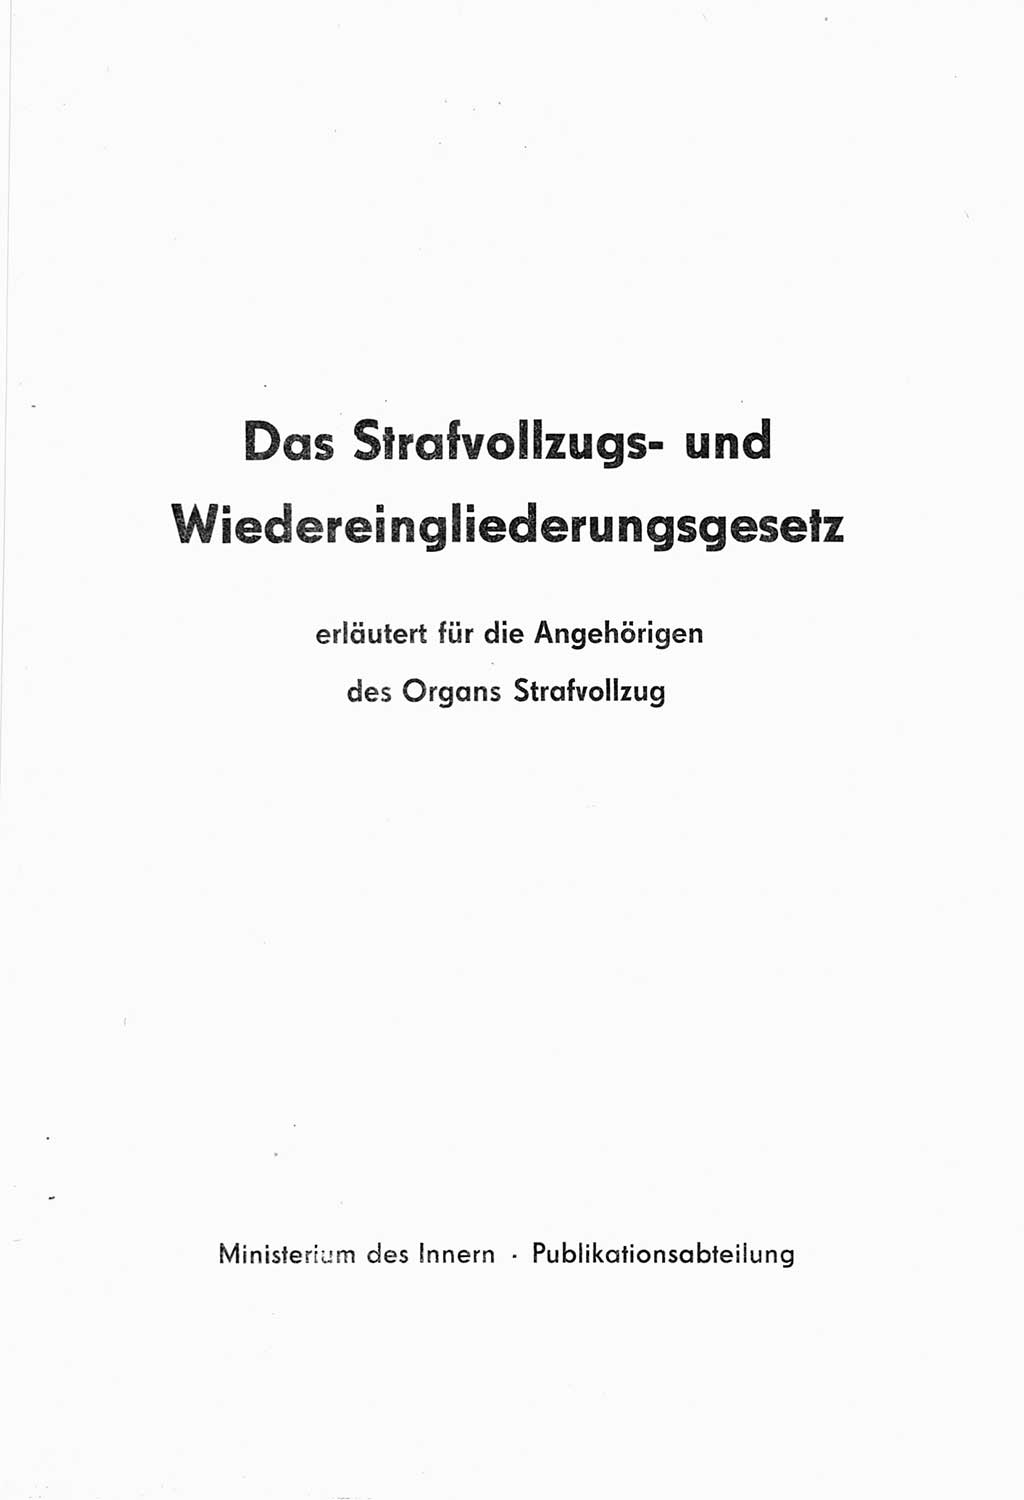 Strafvollzugs- und Wiedereingliederungsgesetz (SVWG) der Deutschen Demokratischen Republik (DDR) 1968, Seite 3 (SVWG DDR 1968, S. 3)